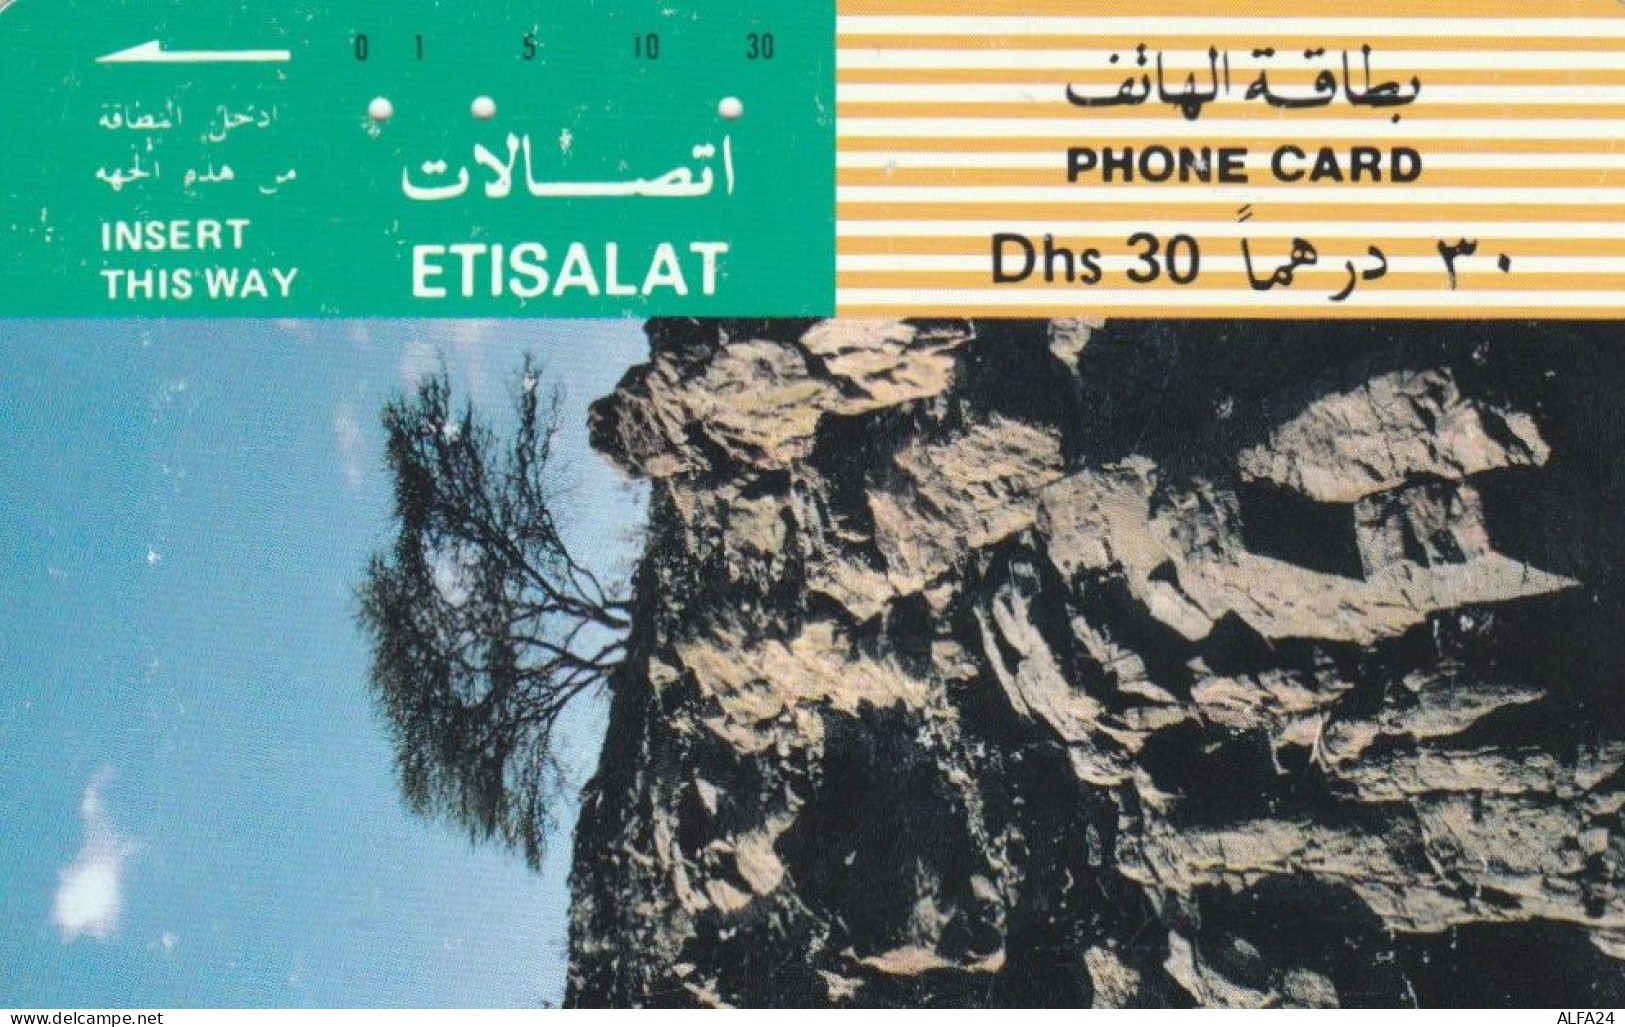 PHONE CARD EMIRATI ARABI (E57.10.4 - Ver. Arab. Emirate